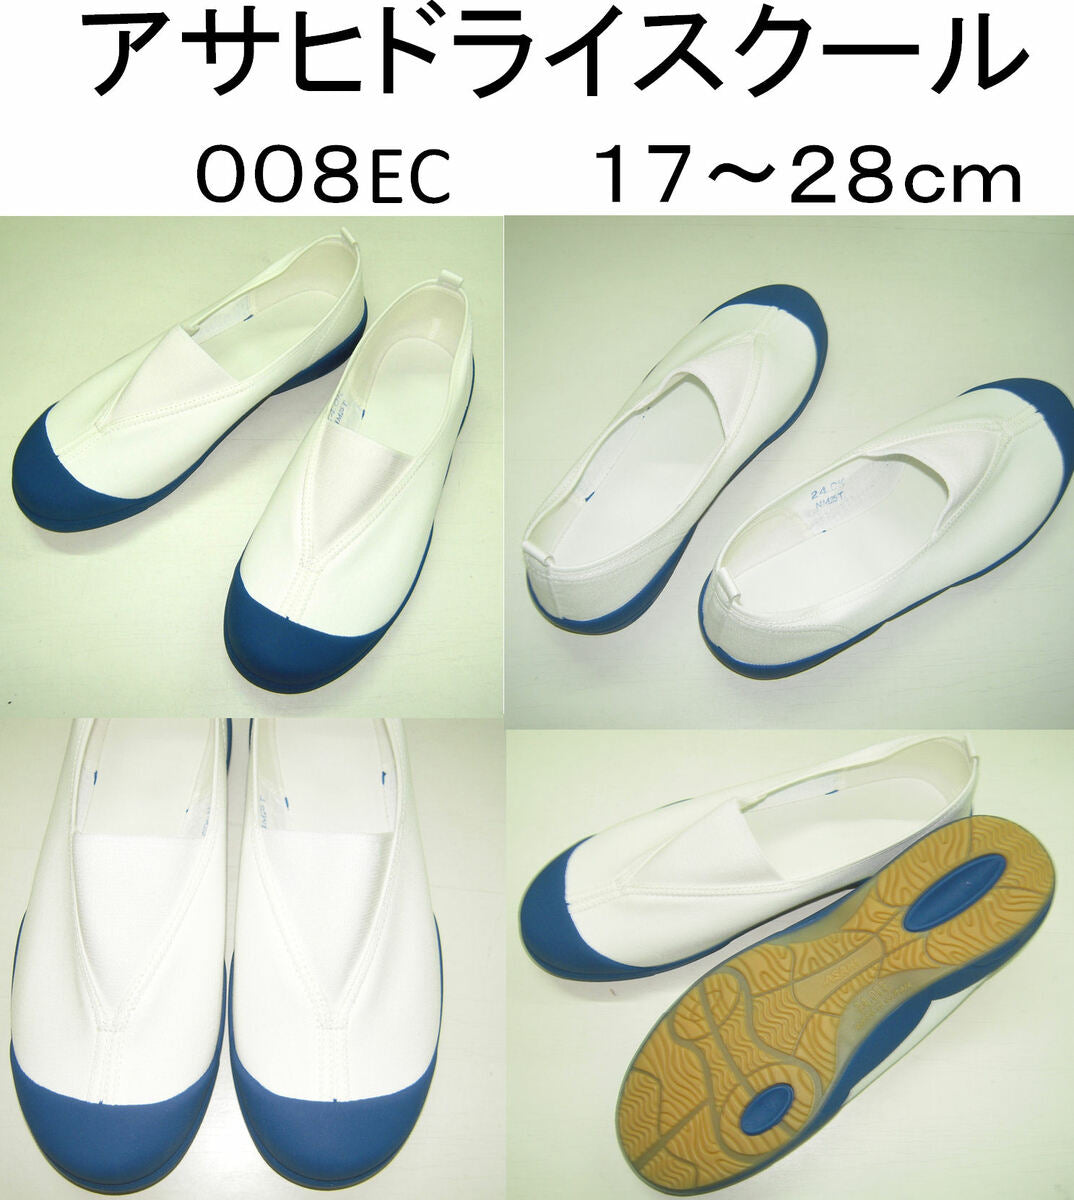 【アサヒ】上履き スクールシューズ 上靴 体育館シューズ 008EC KD38571 白【ASAHIシューズ】日本製